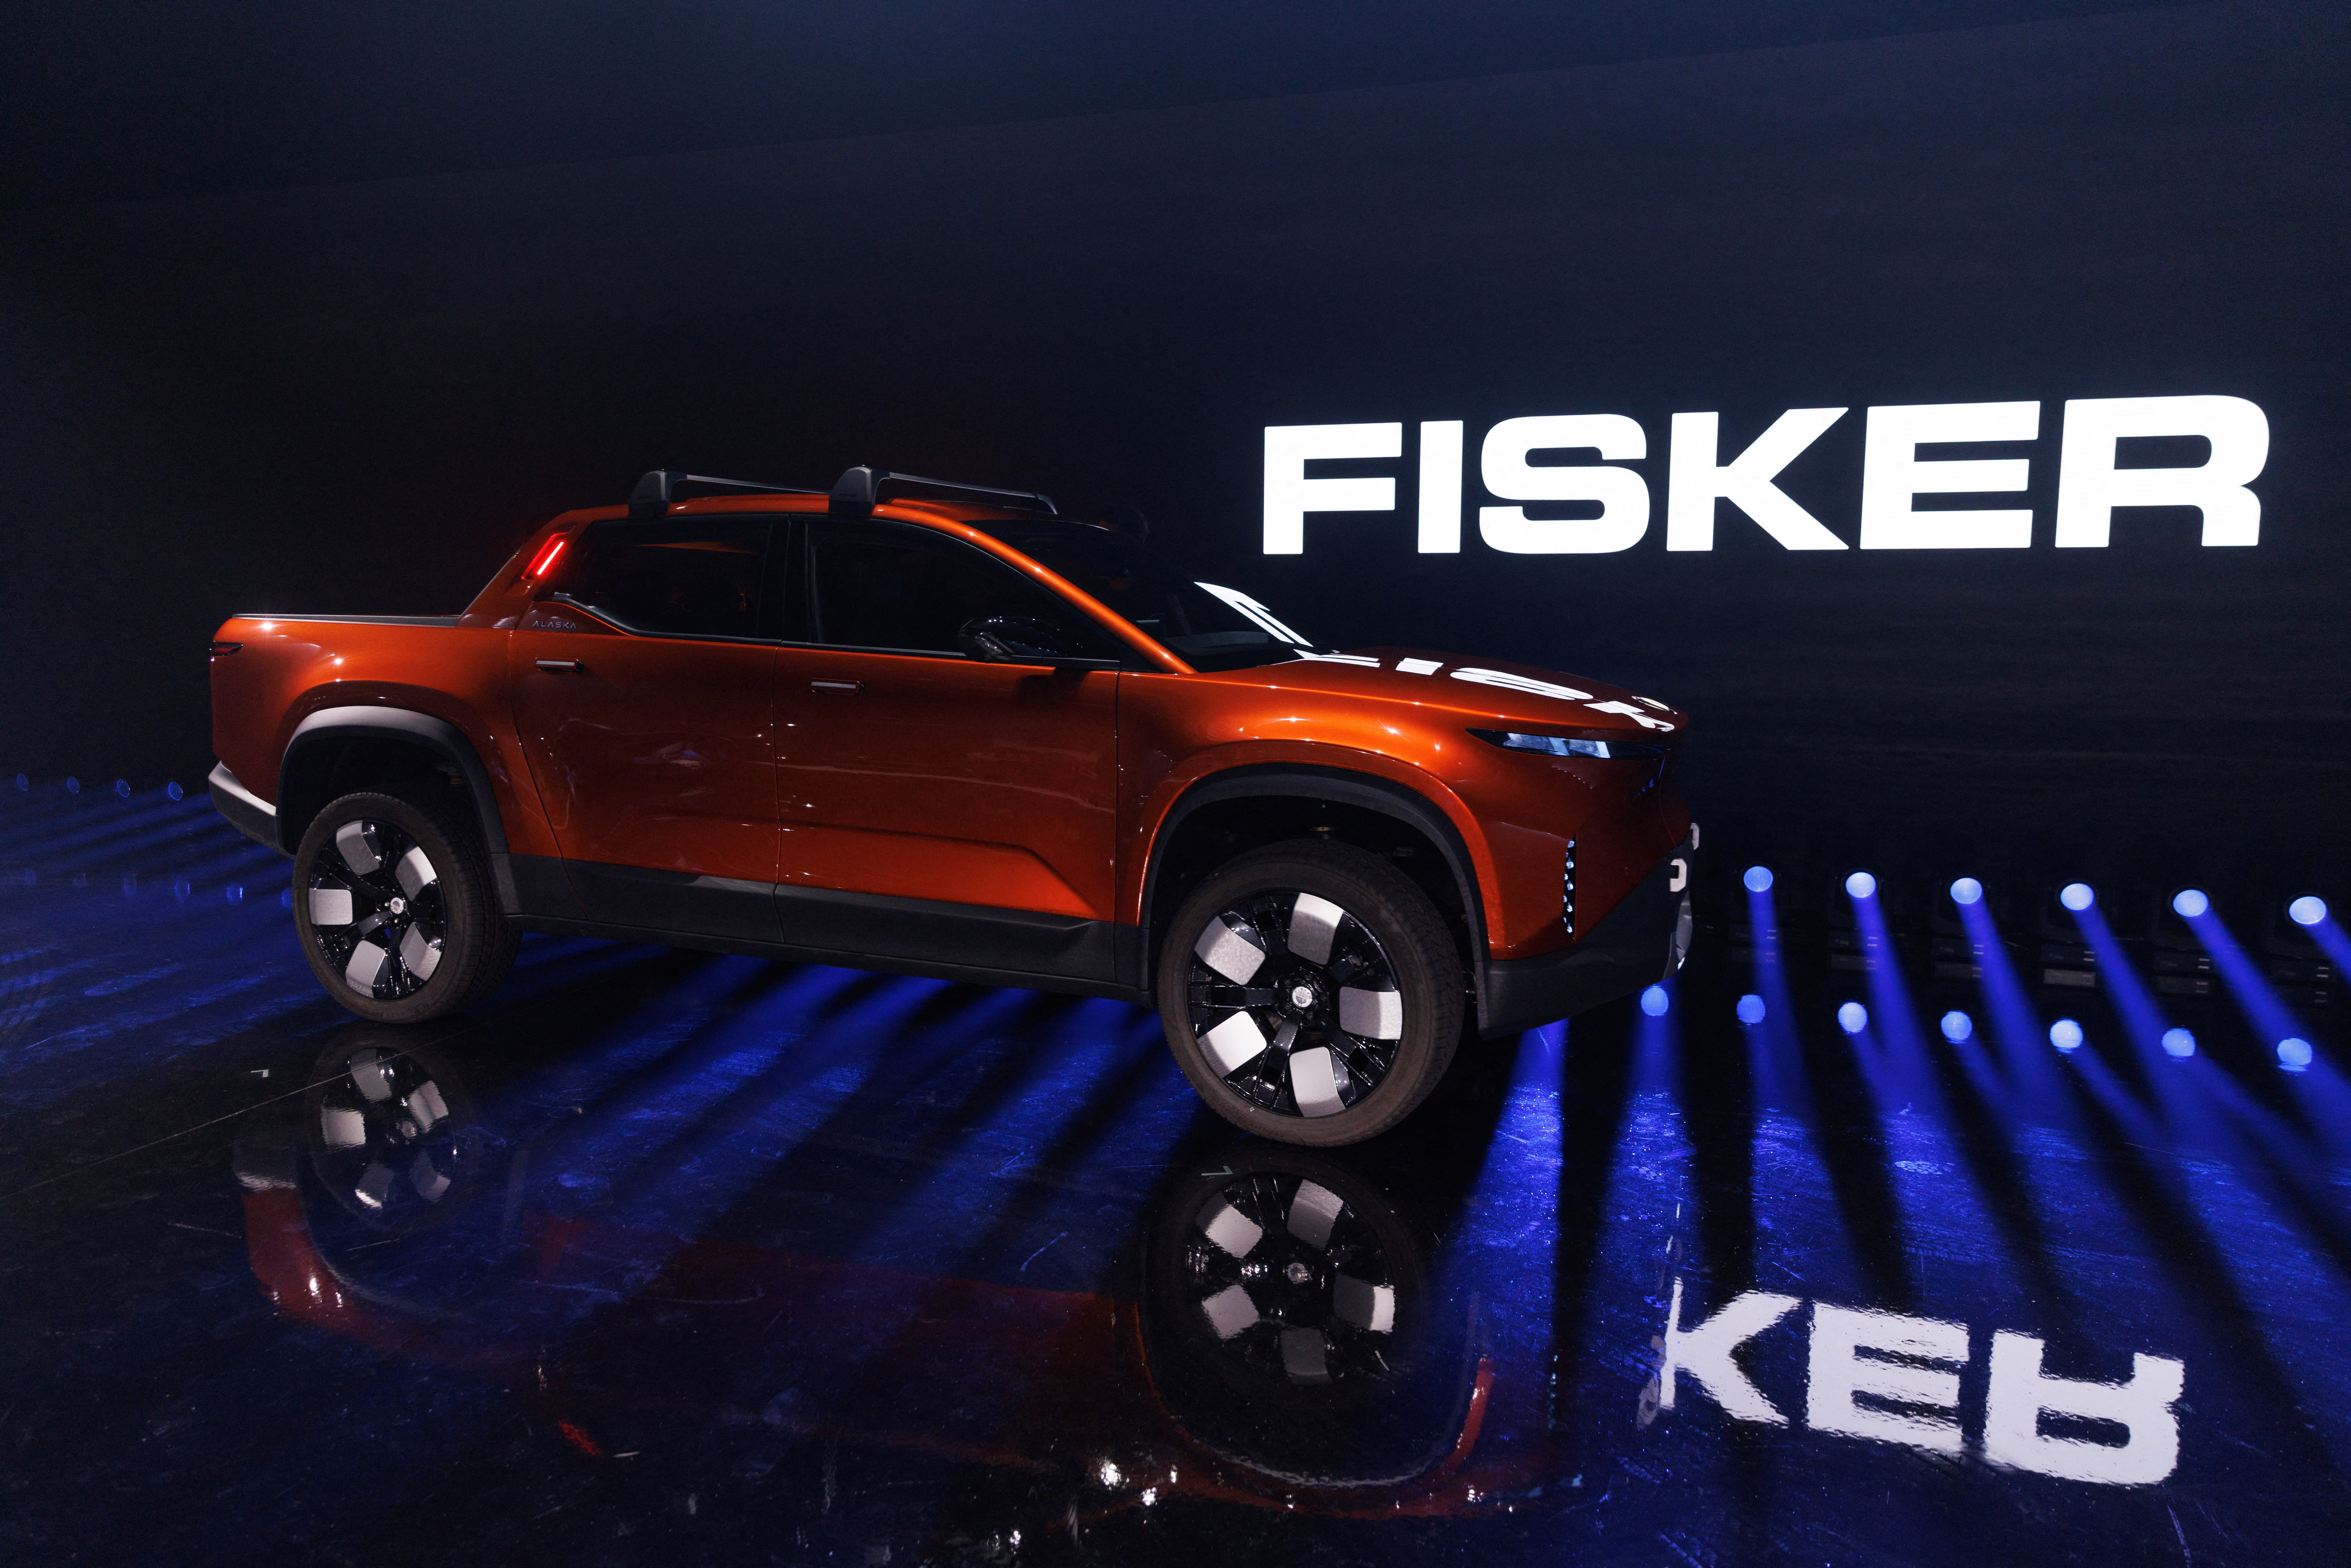 电动车新创公司Fisker已经声请破产保护。路透